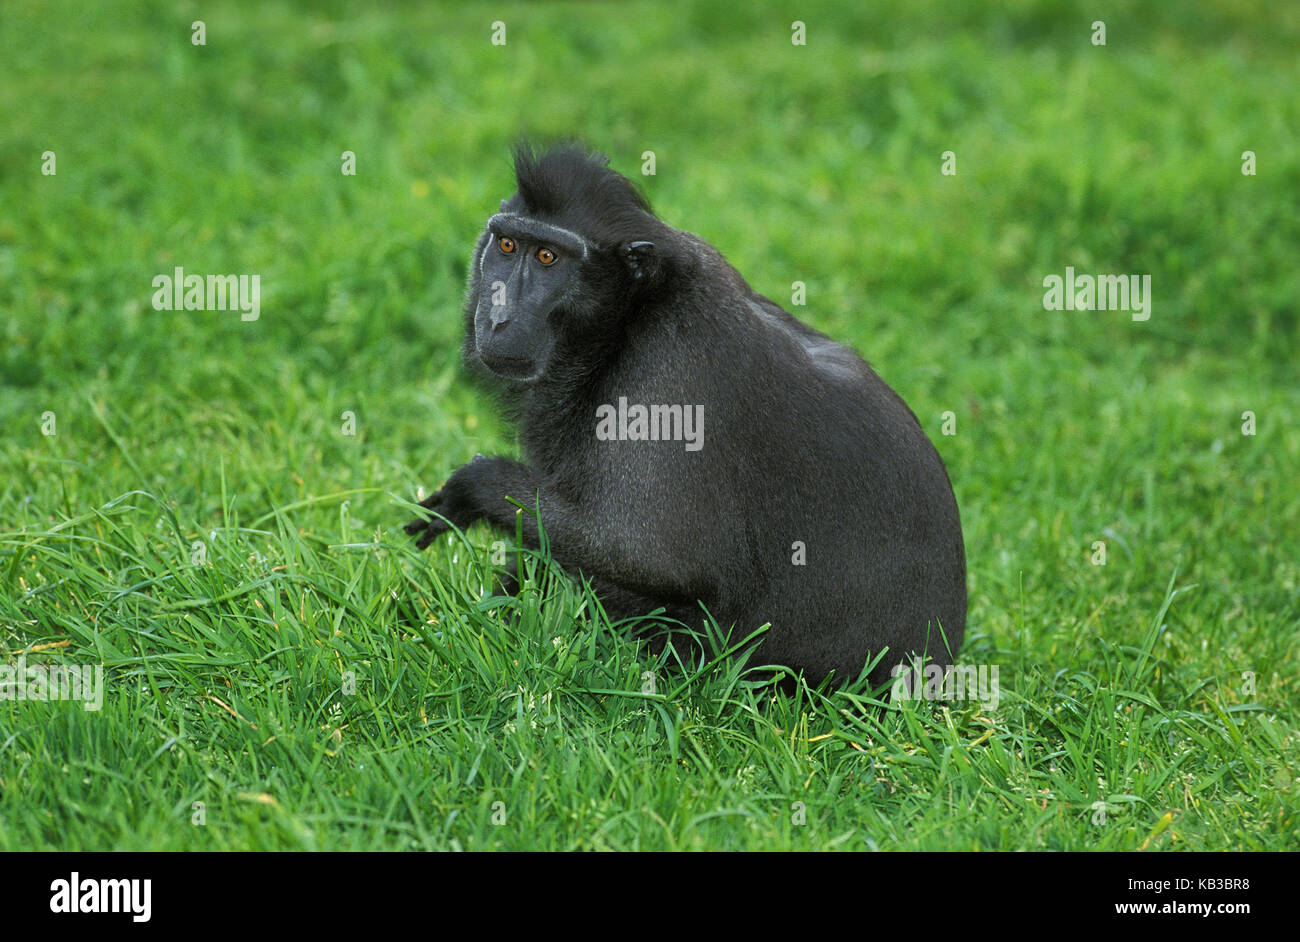 Schopfmakak, Macaca nigra, grass, sit, Stock Photo